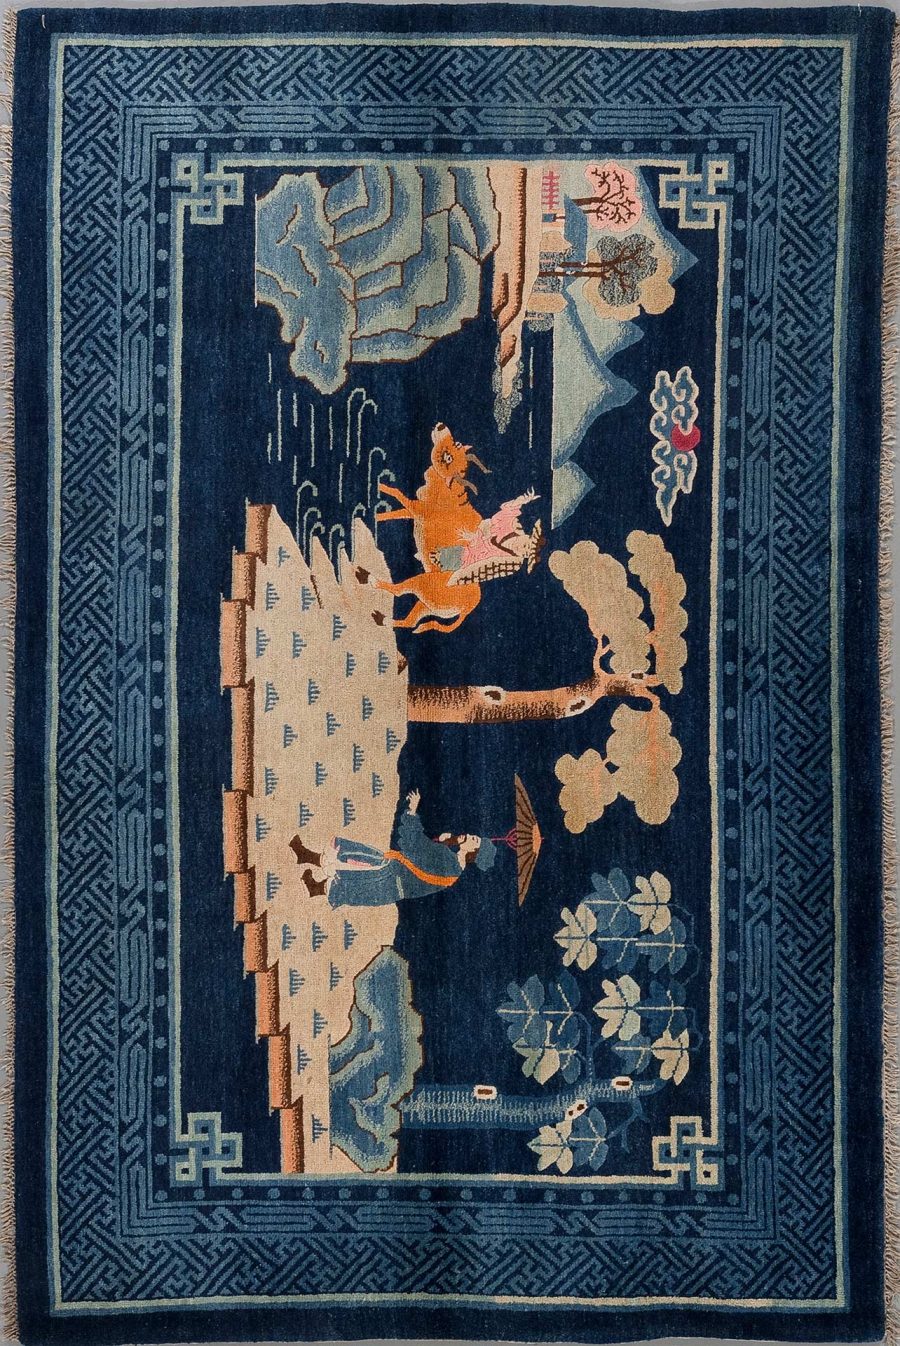 Antiker handgewebter Teppich mit asiatischen Motiven, darstellend einen Reiter auf einem Pferd und eine Person zu Fuß, umgeben von traditionellen Pflanzenmustern und geometrischen Grenzen.